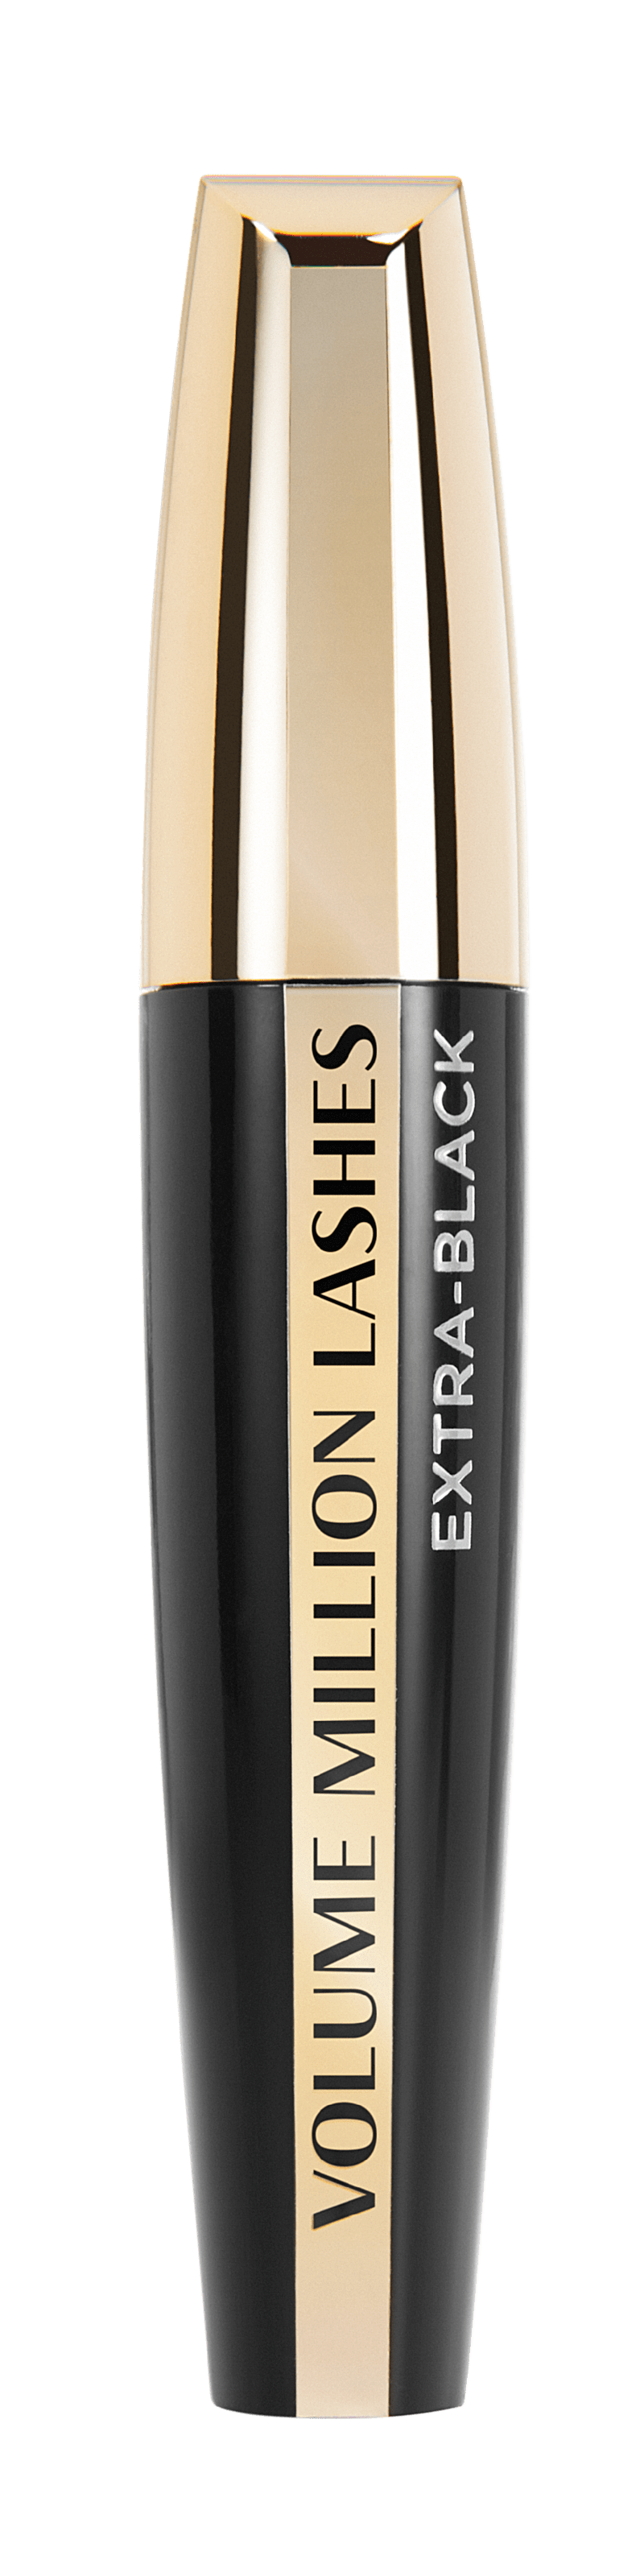 Тушь для ресниц L'Oréal Paris Million Lashes Extra-black оттенок Экстра-черный, 9 мл